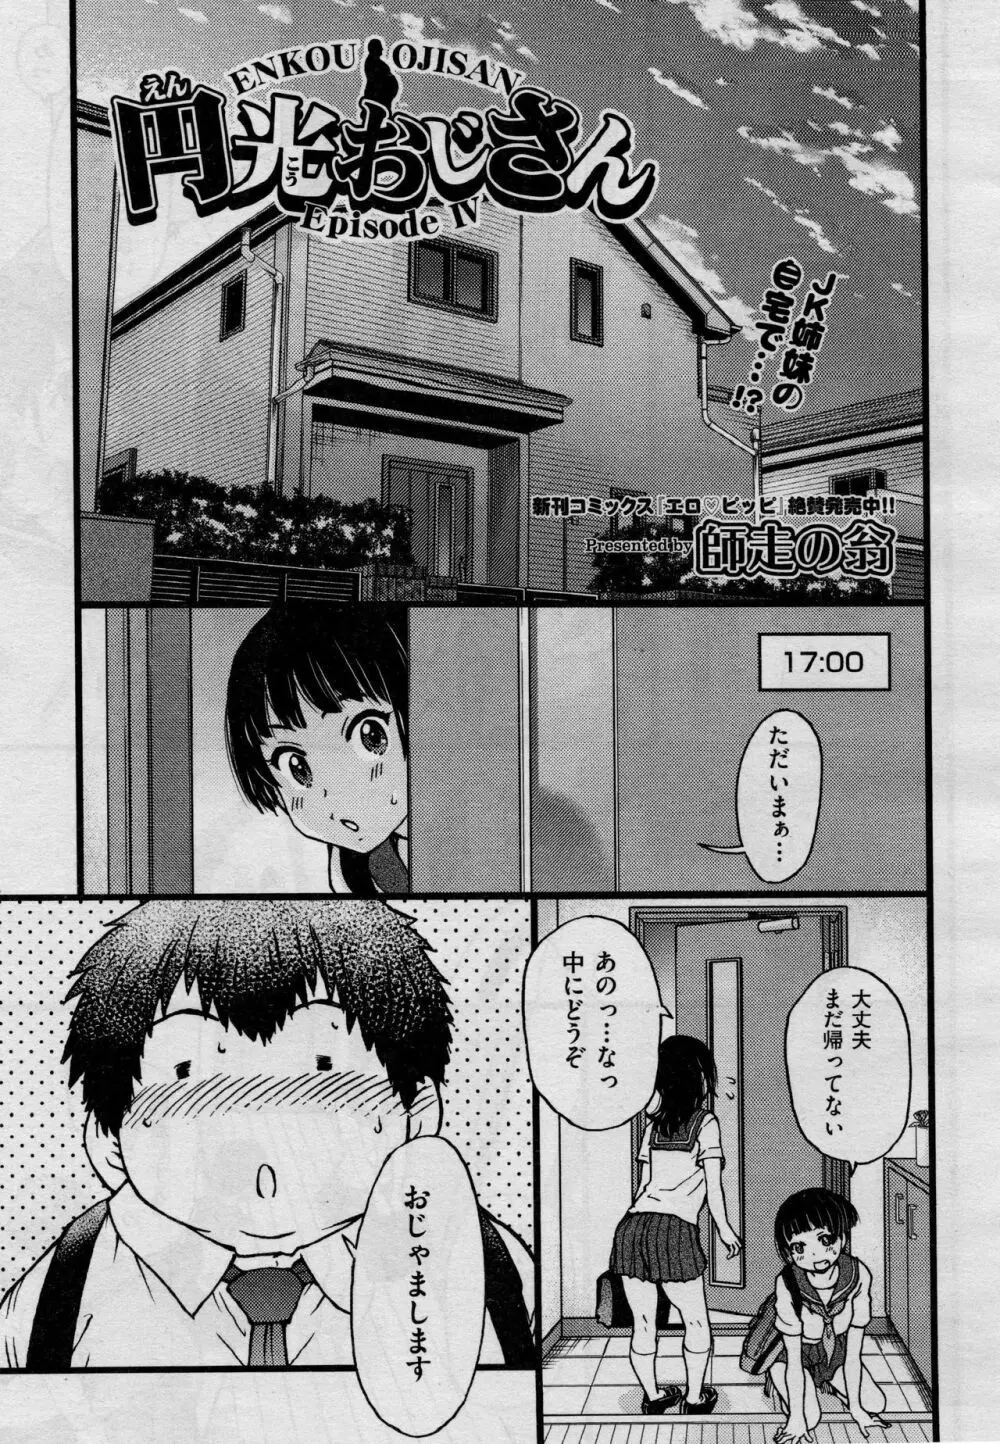 円光おじさん Episode IV 3ページ